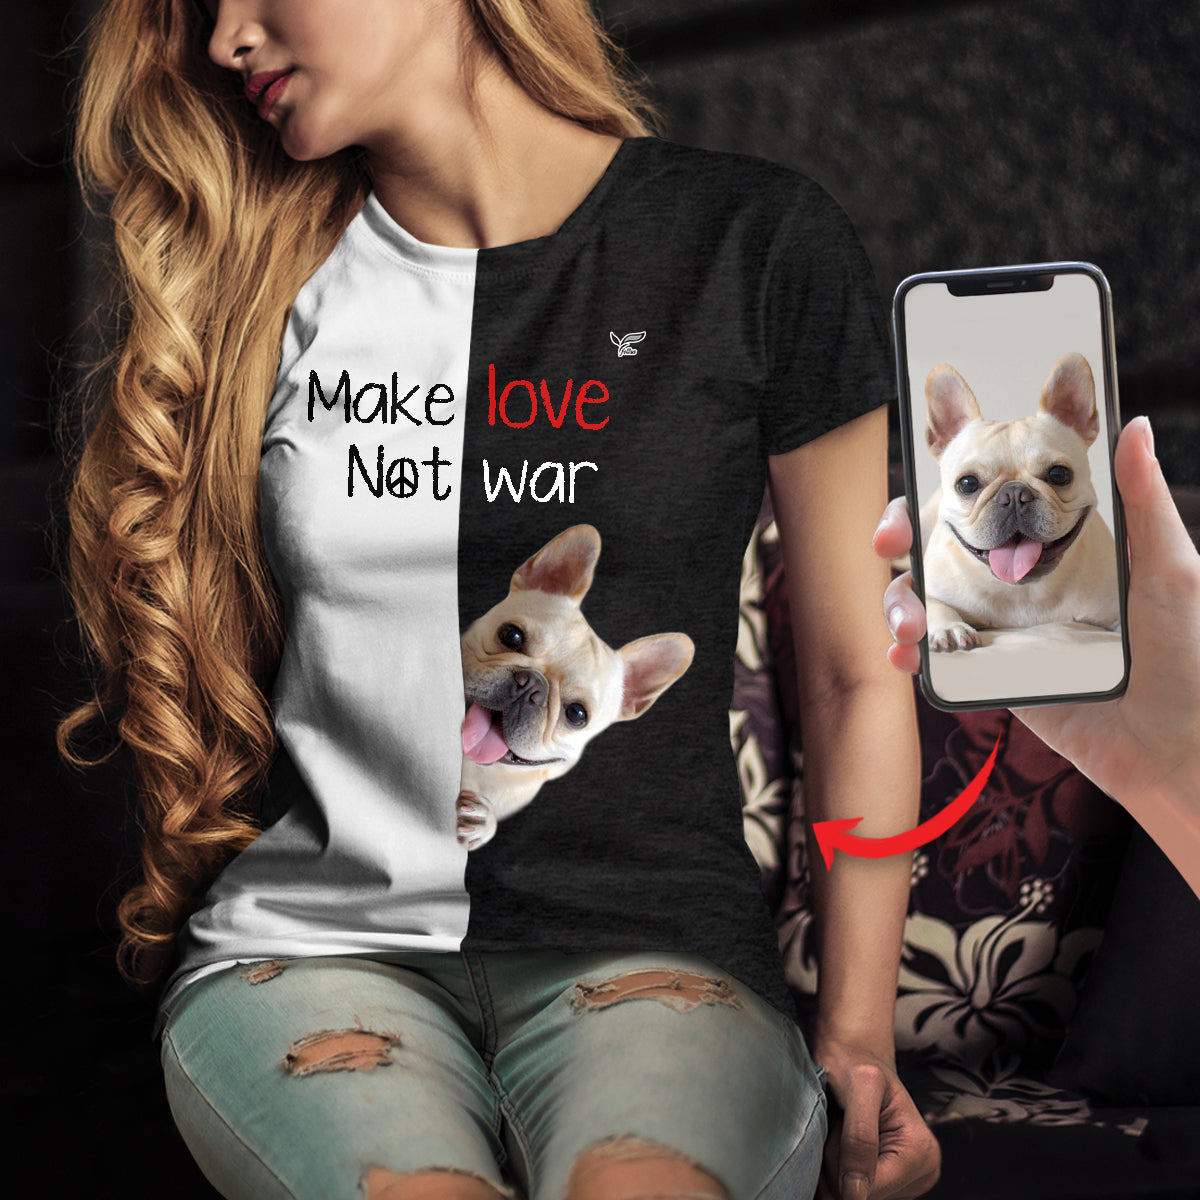 Make Love Not War - T-shirt personnalisé avec la photo de votre animal V2